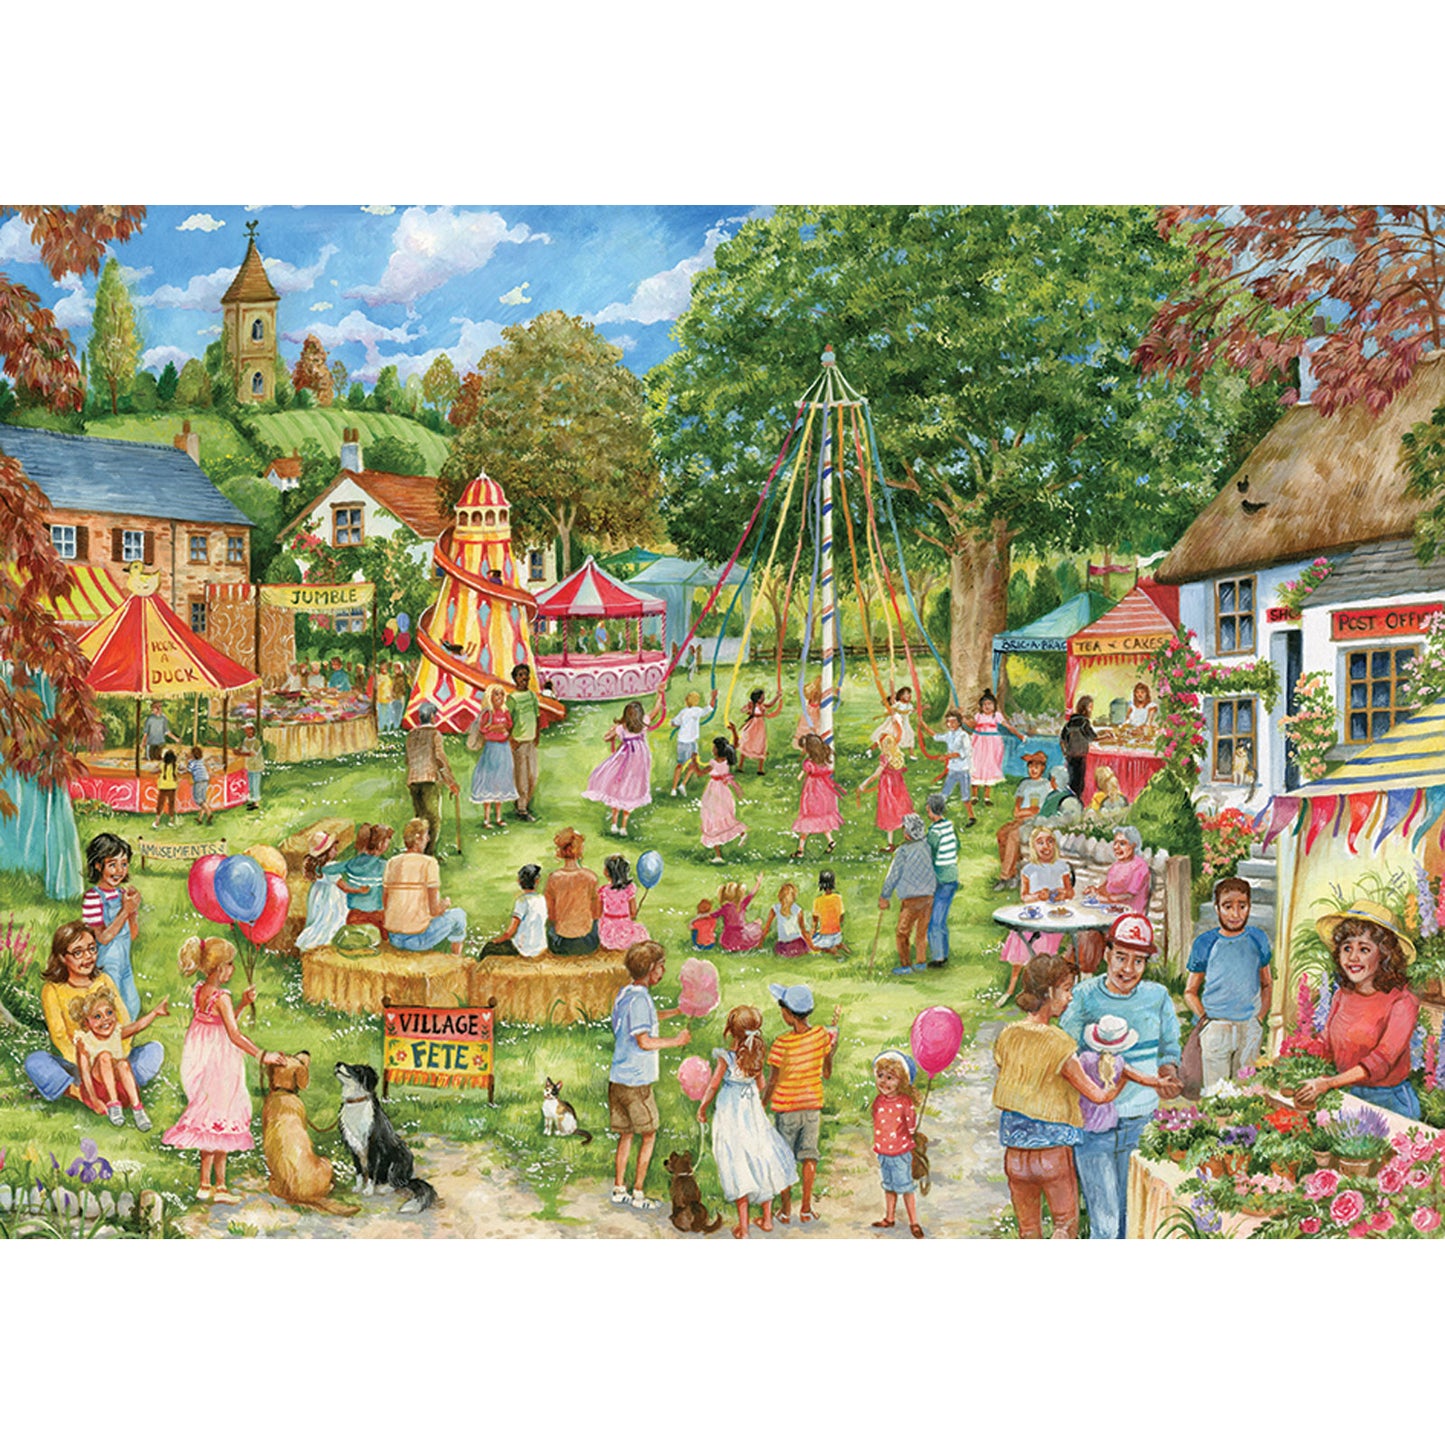 Village Fete - 1000 Piece Jigsaw Puzzle